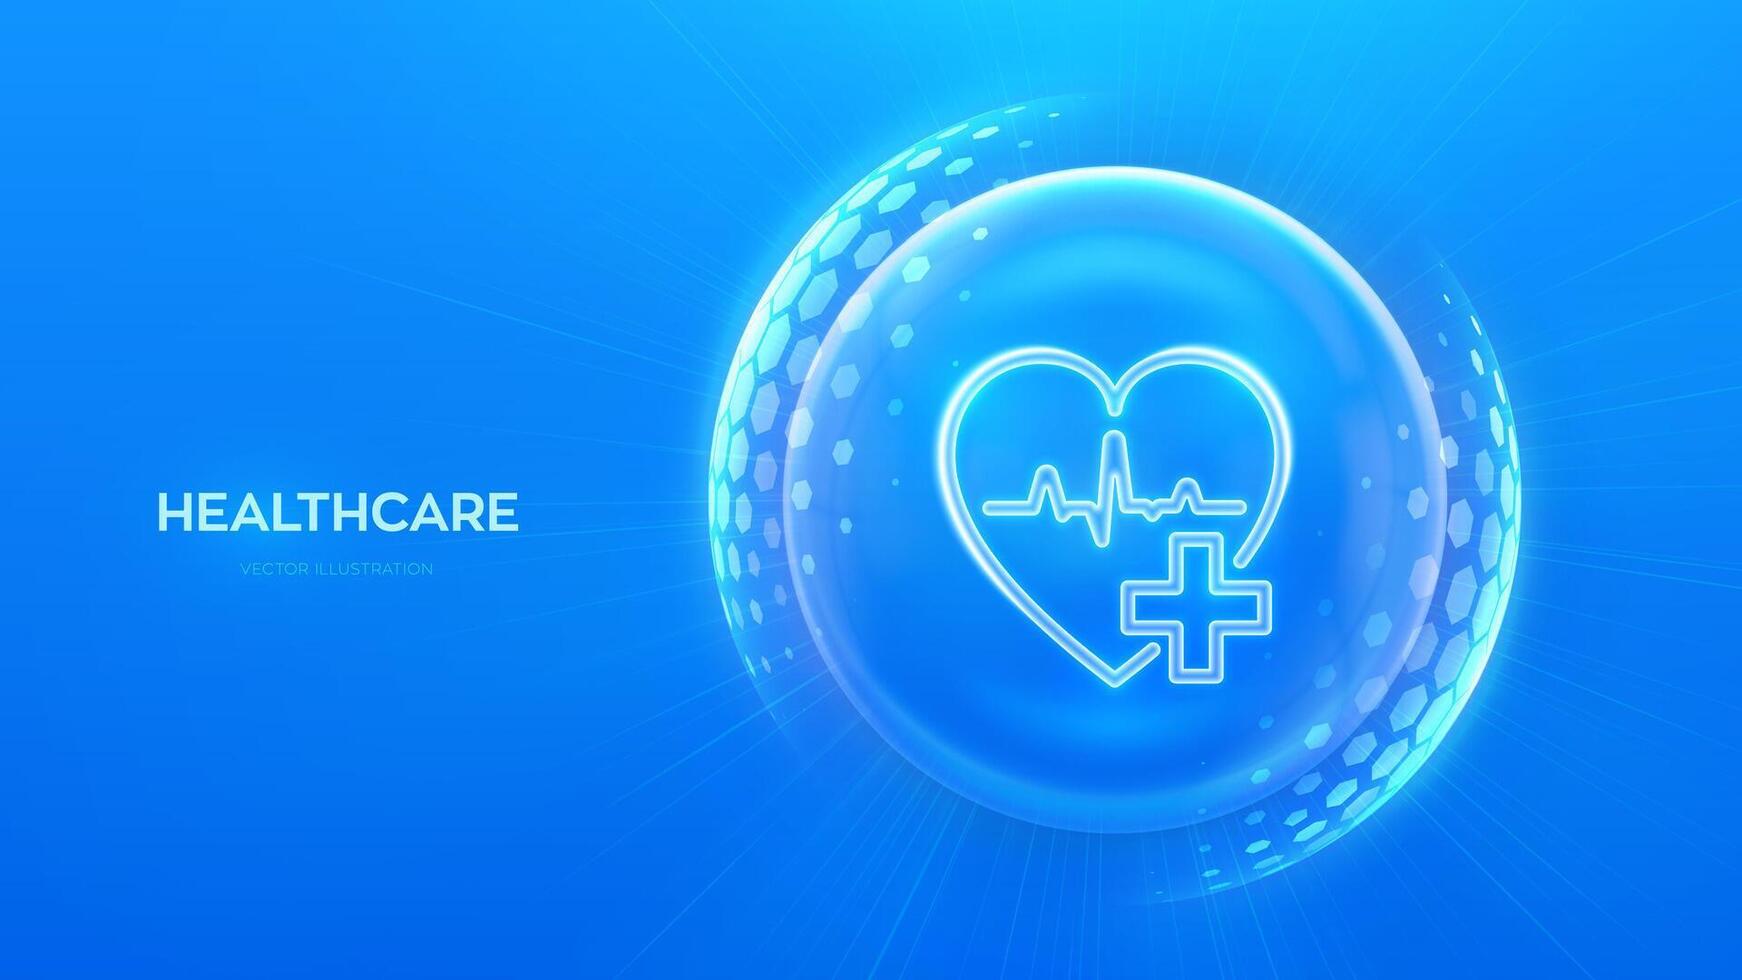 Gesundheitspflege. Gesundheit Versicherung. Herz mit Kreuz Symbol Innerhalb transparent Schutz Kugel Schild mit Hexagon Muster auf Blau Hintergrund. Gesundheit Pflege und medizinisch Dienstleistungen Konzept. Vektor Illustration.